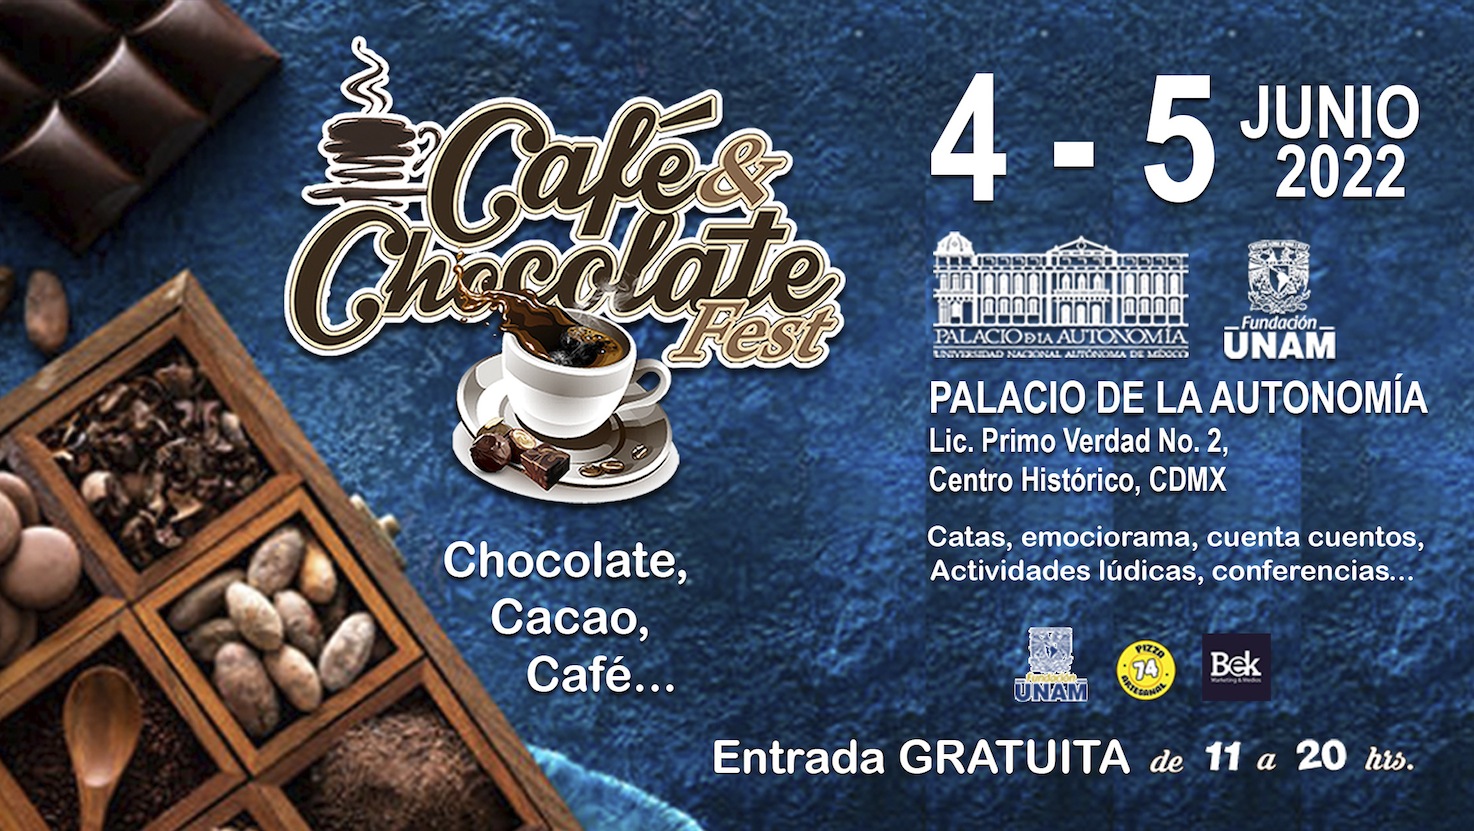 Este 4 y 5 de Junio,  deleita tu paladar en el Café & Chocolate Fest en Palacio de la Autonomía de la Fundación UNAM